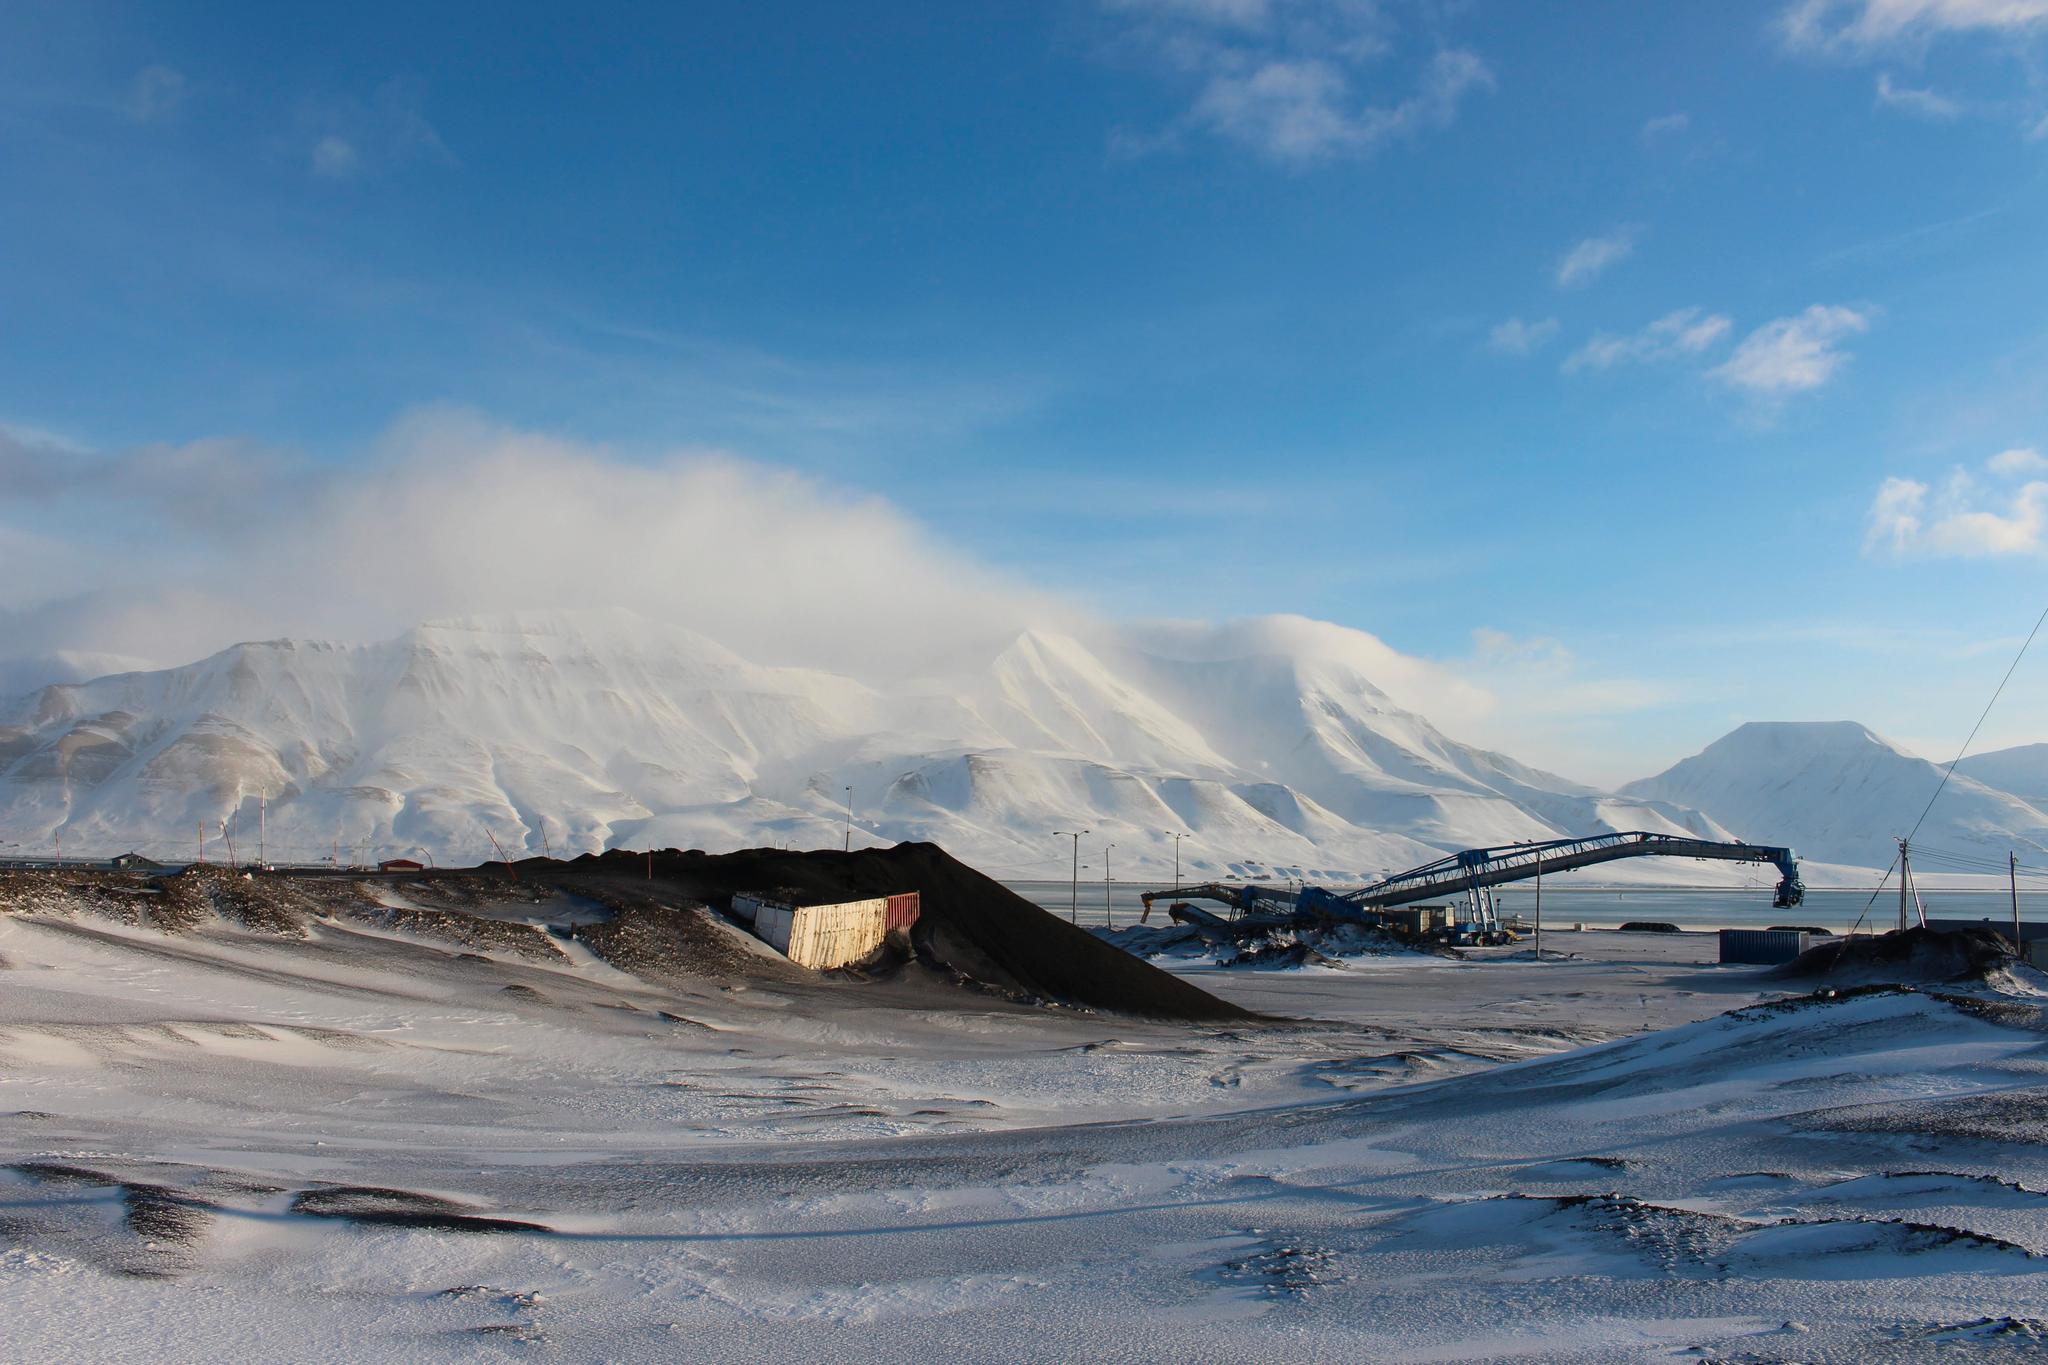 Kineserne hevder at de har flere og sterkere rettigheter på Svalbard enn det norske myndigheter legger til grunn, skriver debattanten.